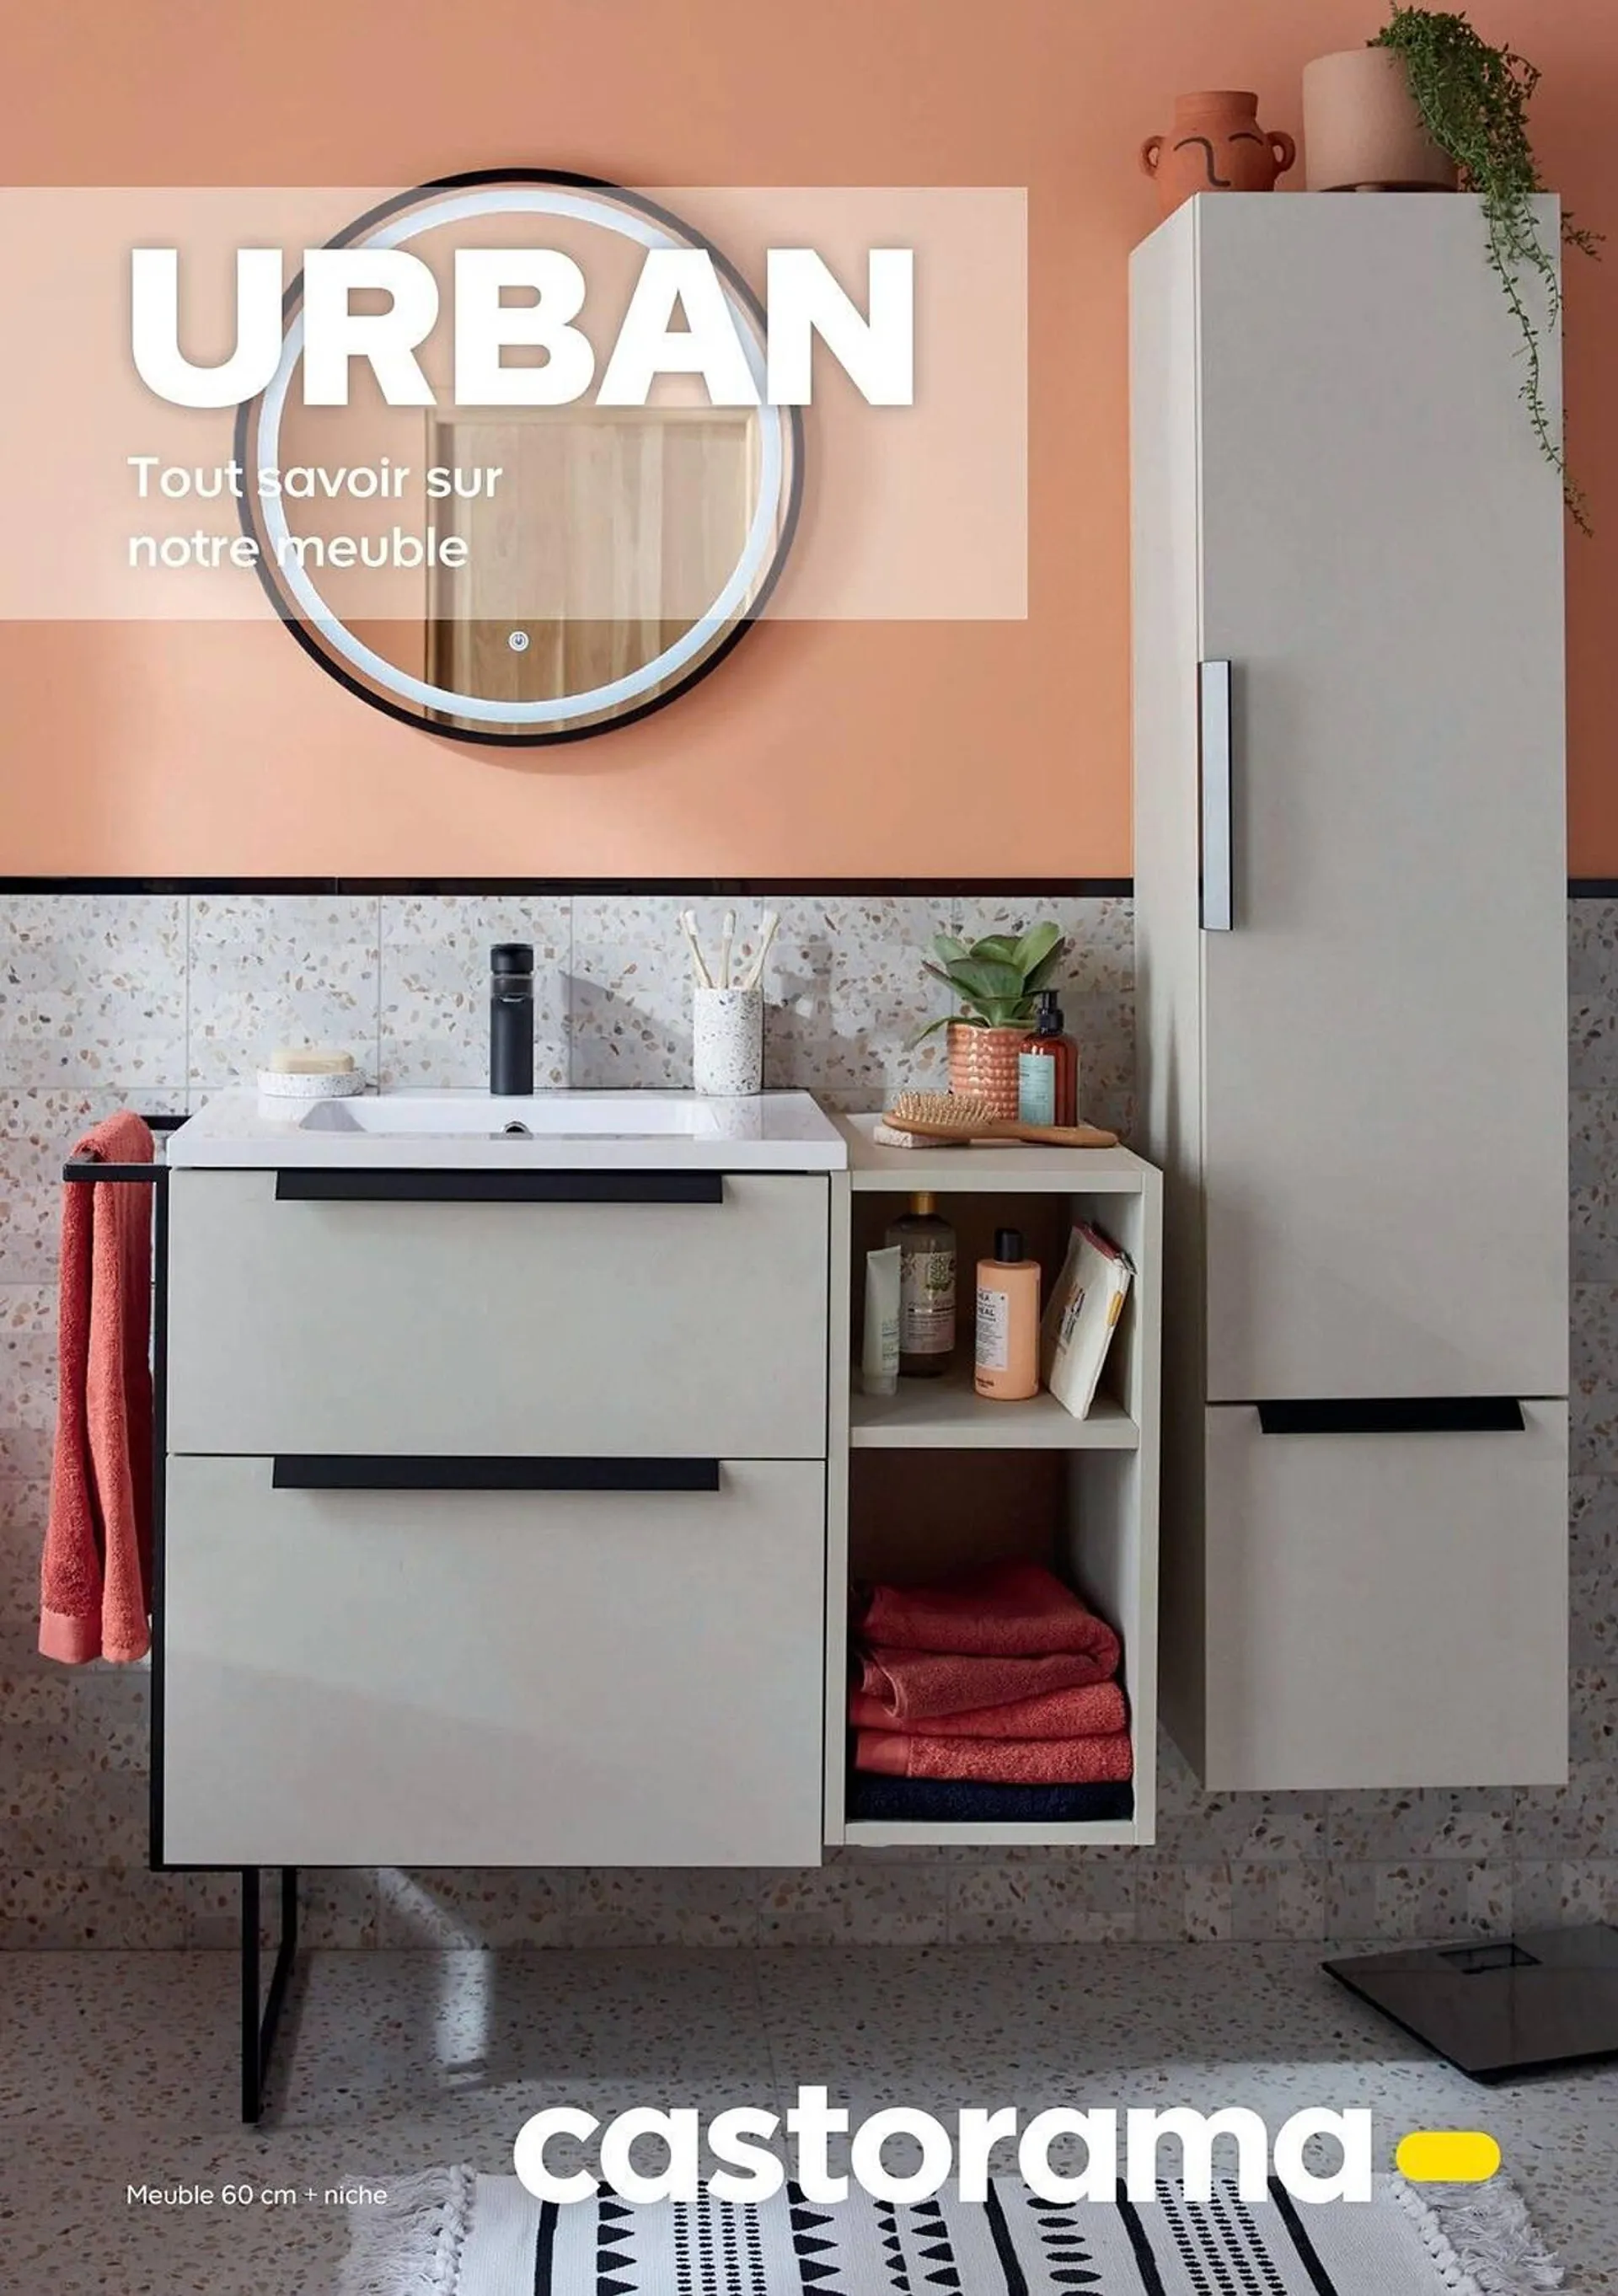 Catalogue Castorama - Urban - 1